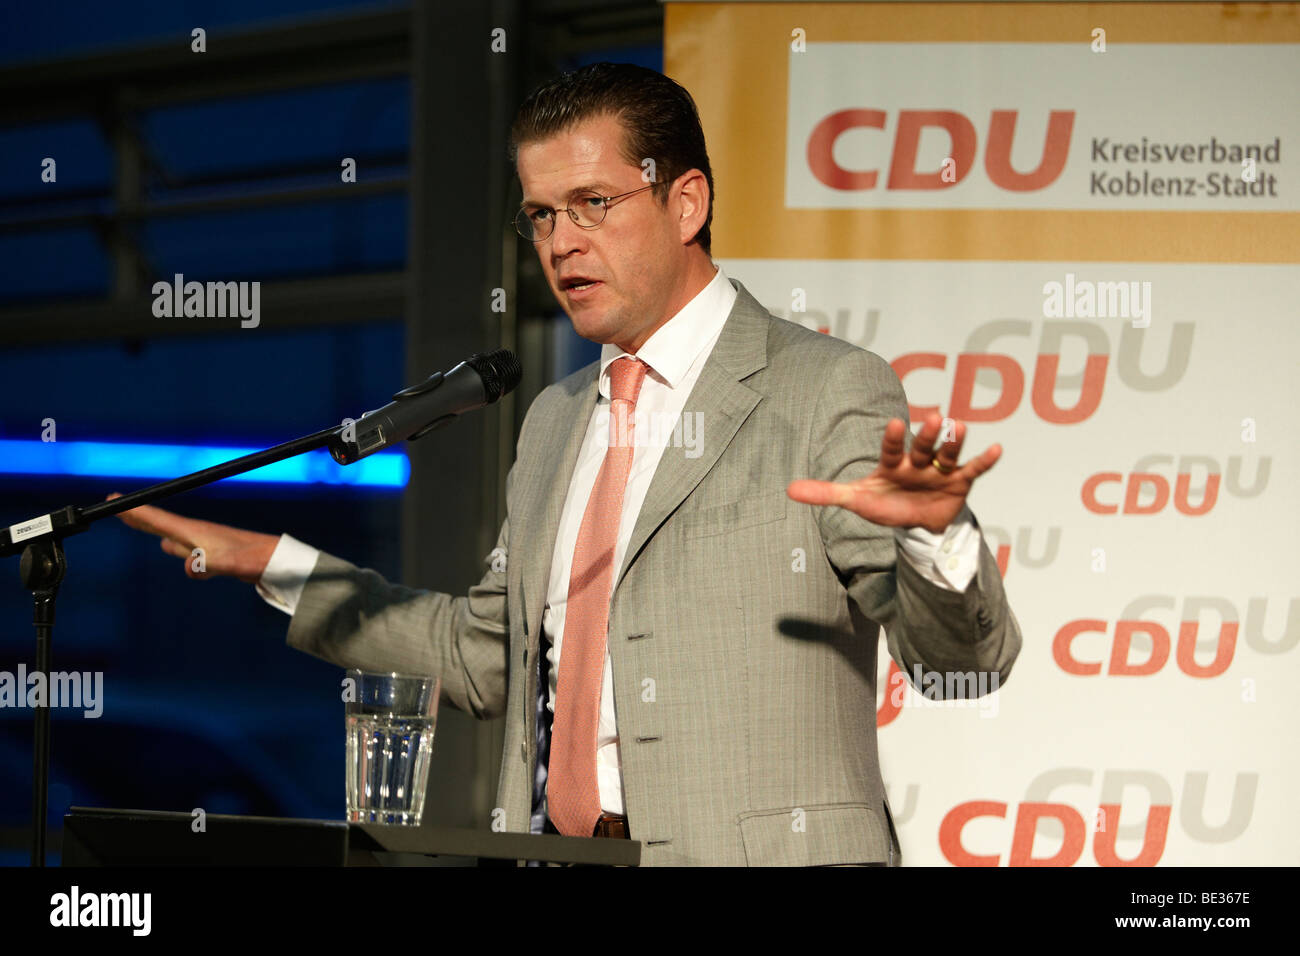 Le ministre fédéral de l'économie allemande Dr. Karl-Theodor zu Guttenberg, CSU, à une apparence de campagne à Coblence, Rhénanie-Palatinat Banque D'Images